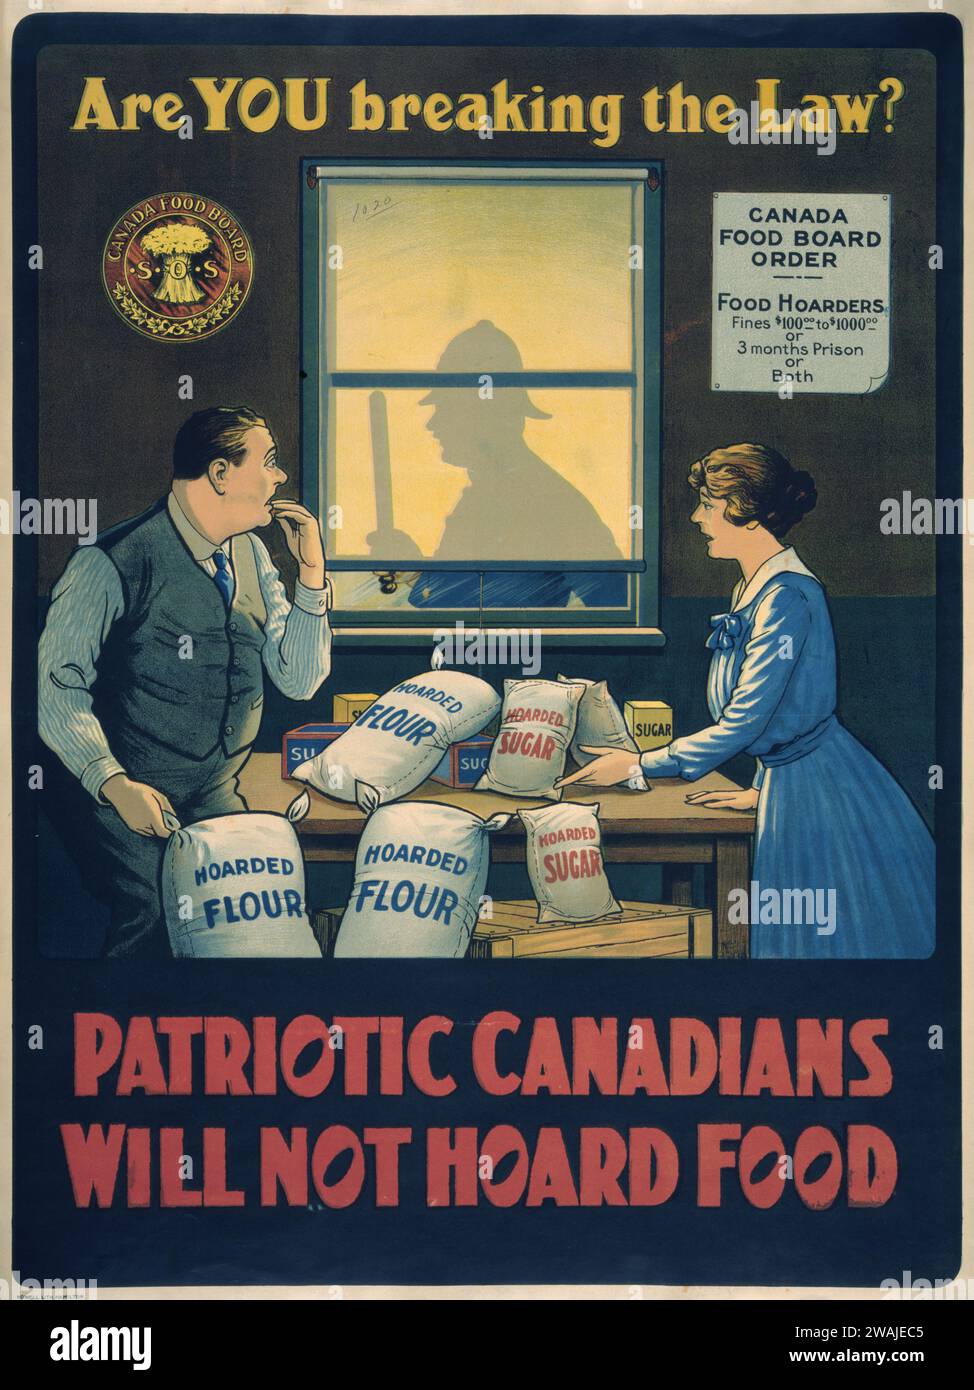 Affiche canadienne de la première Guerre mondiale mettant en garde contre l'amarrage illégal de nourriture. Banque D'Images